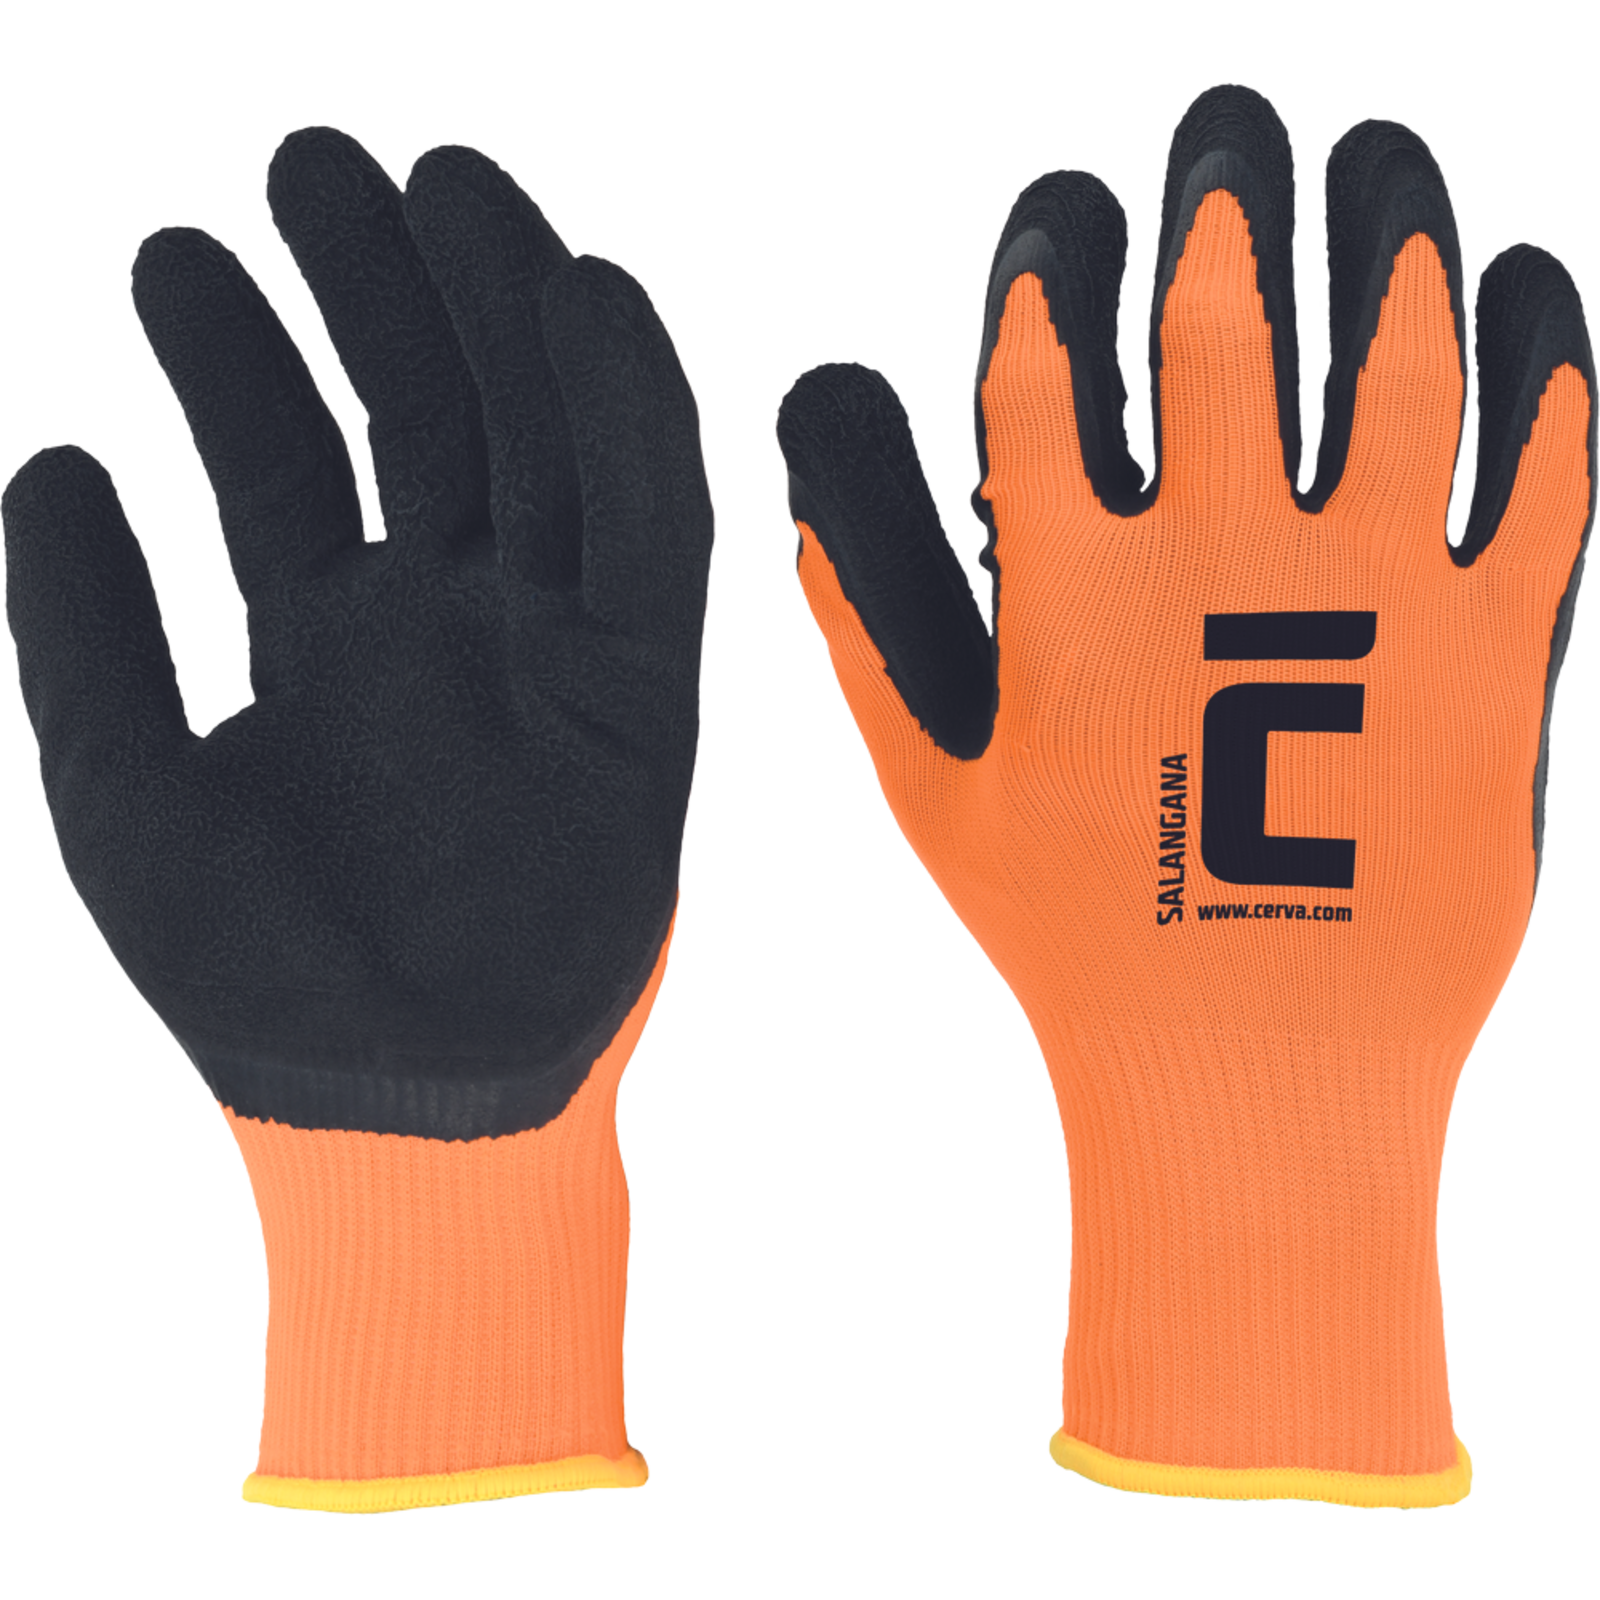 Povrstvené pracovné rukavice Cerva Salangana - veľkosť: 7/S, farba: oranžová